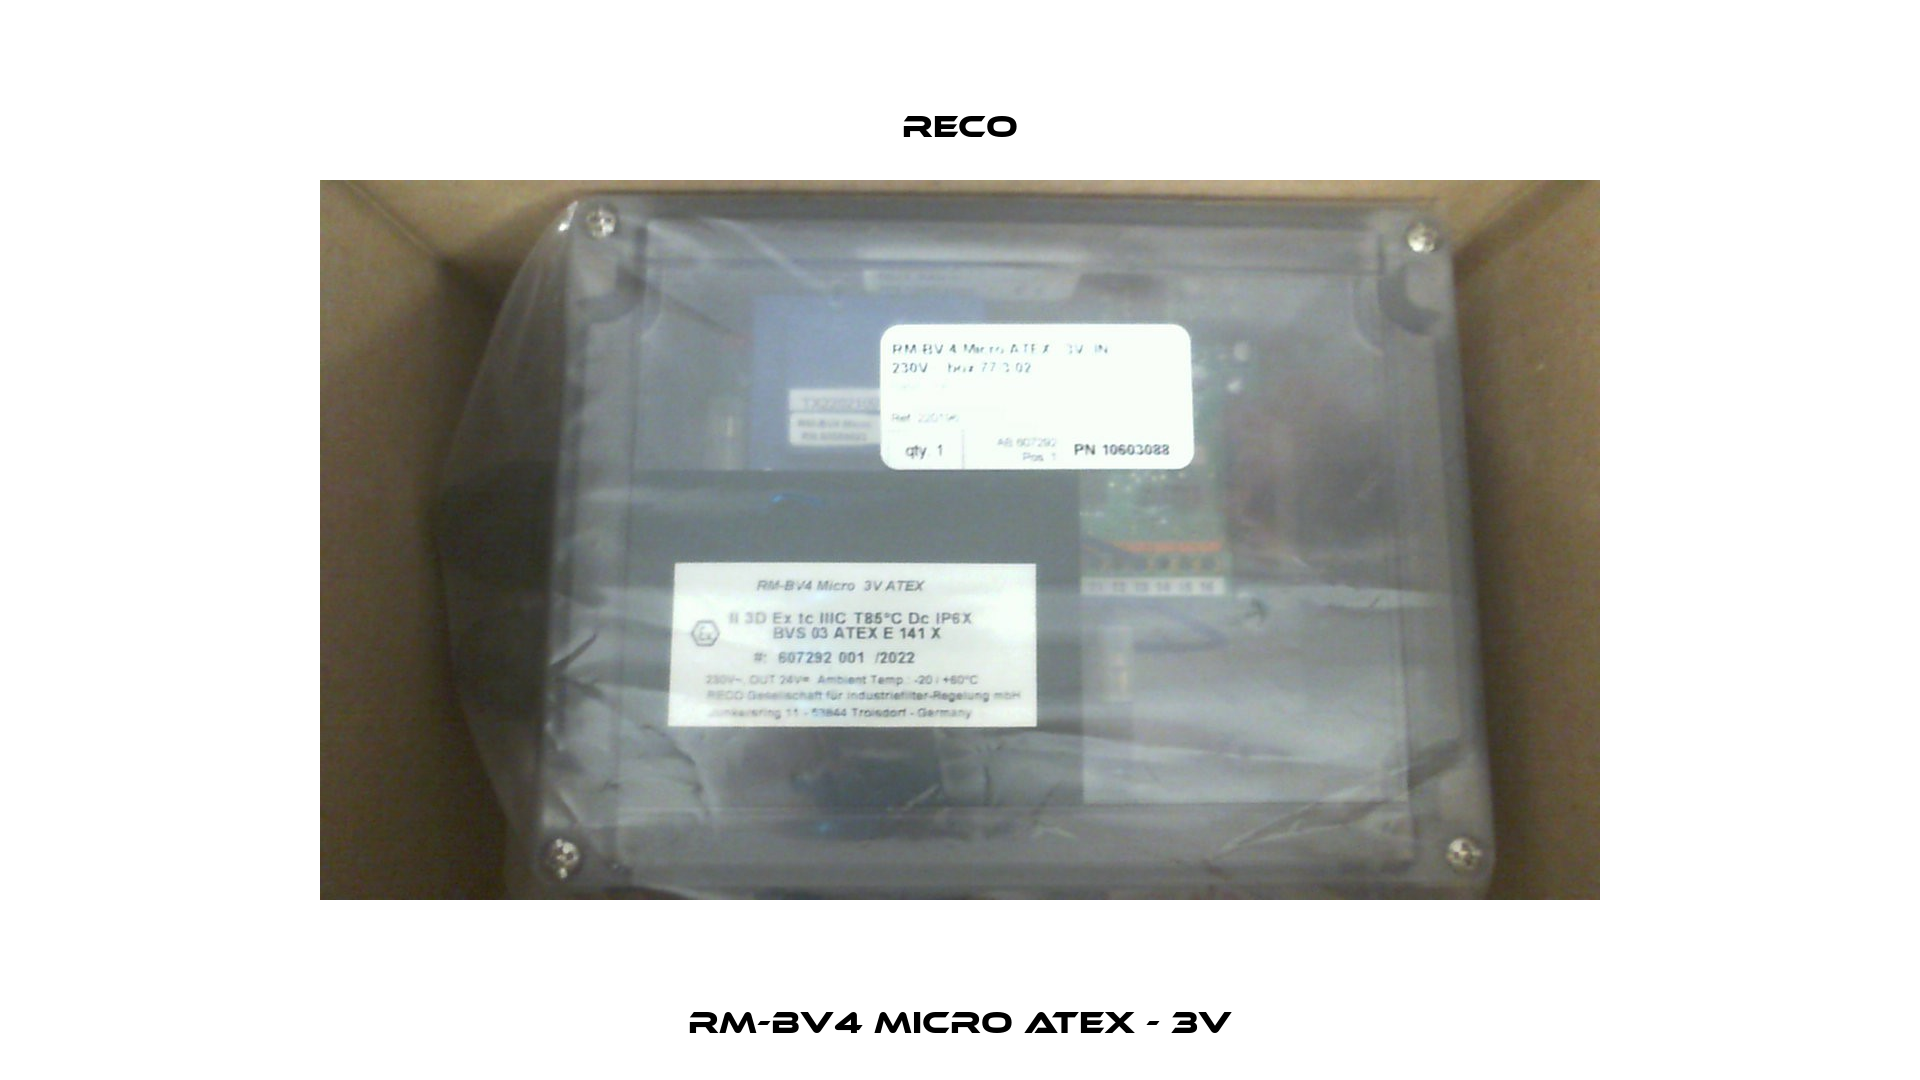 RM-BV4 Micro ATEX - 3V Reco